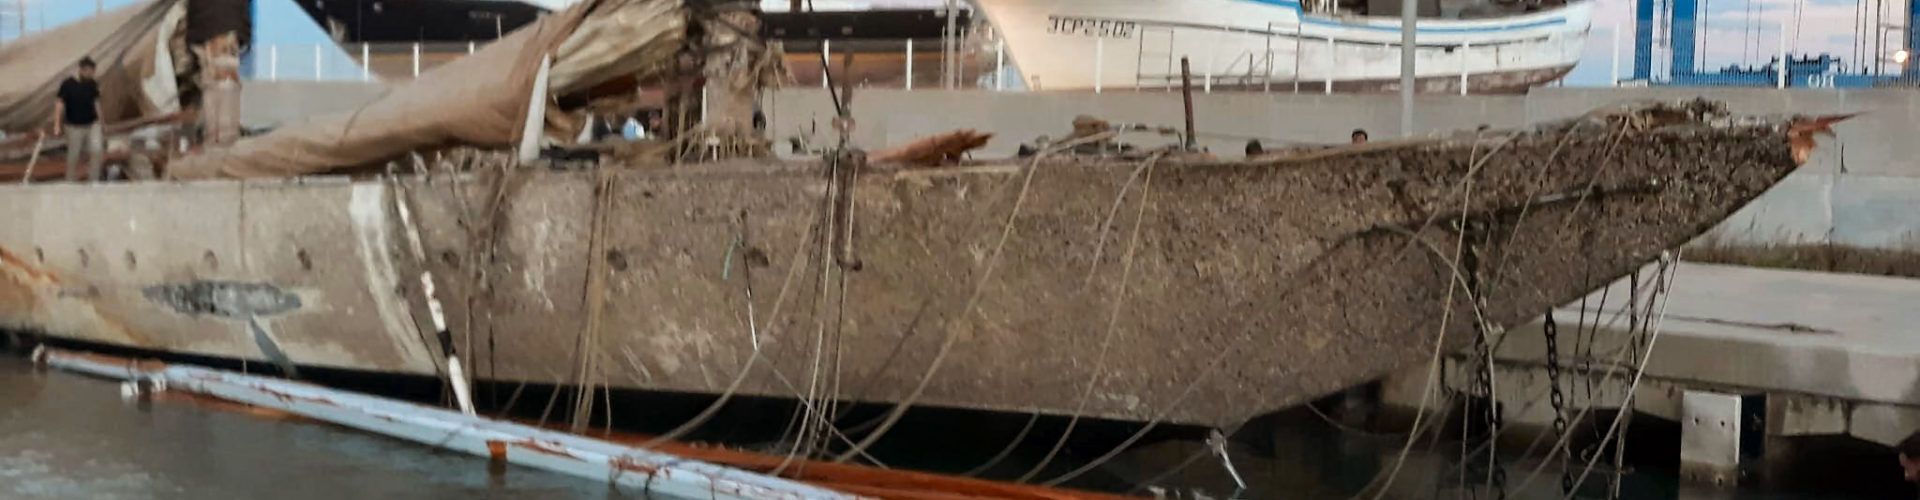 Un luxós iot veler enfonsat al port de Tarragona arriba a Vinaròs per al seu desballestament